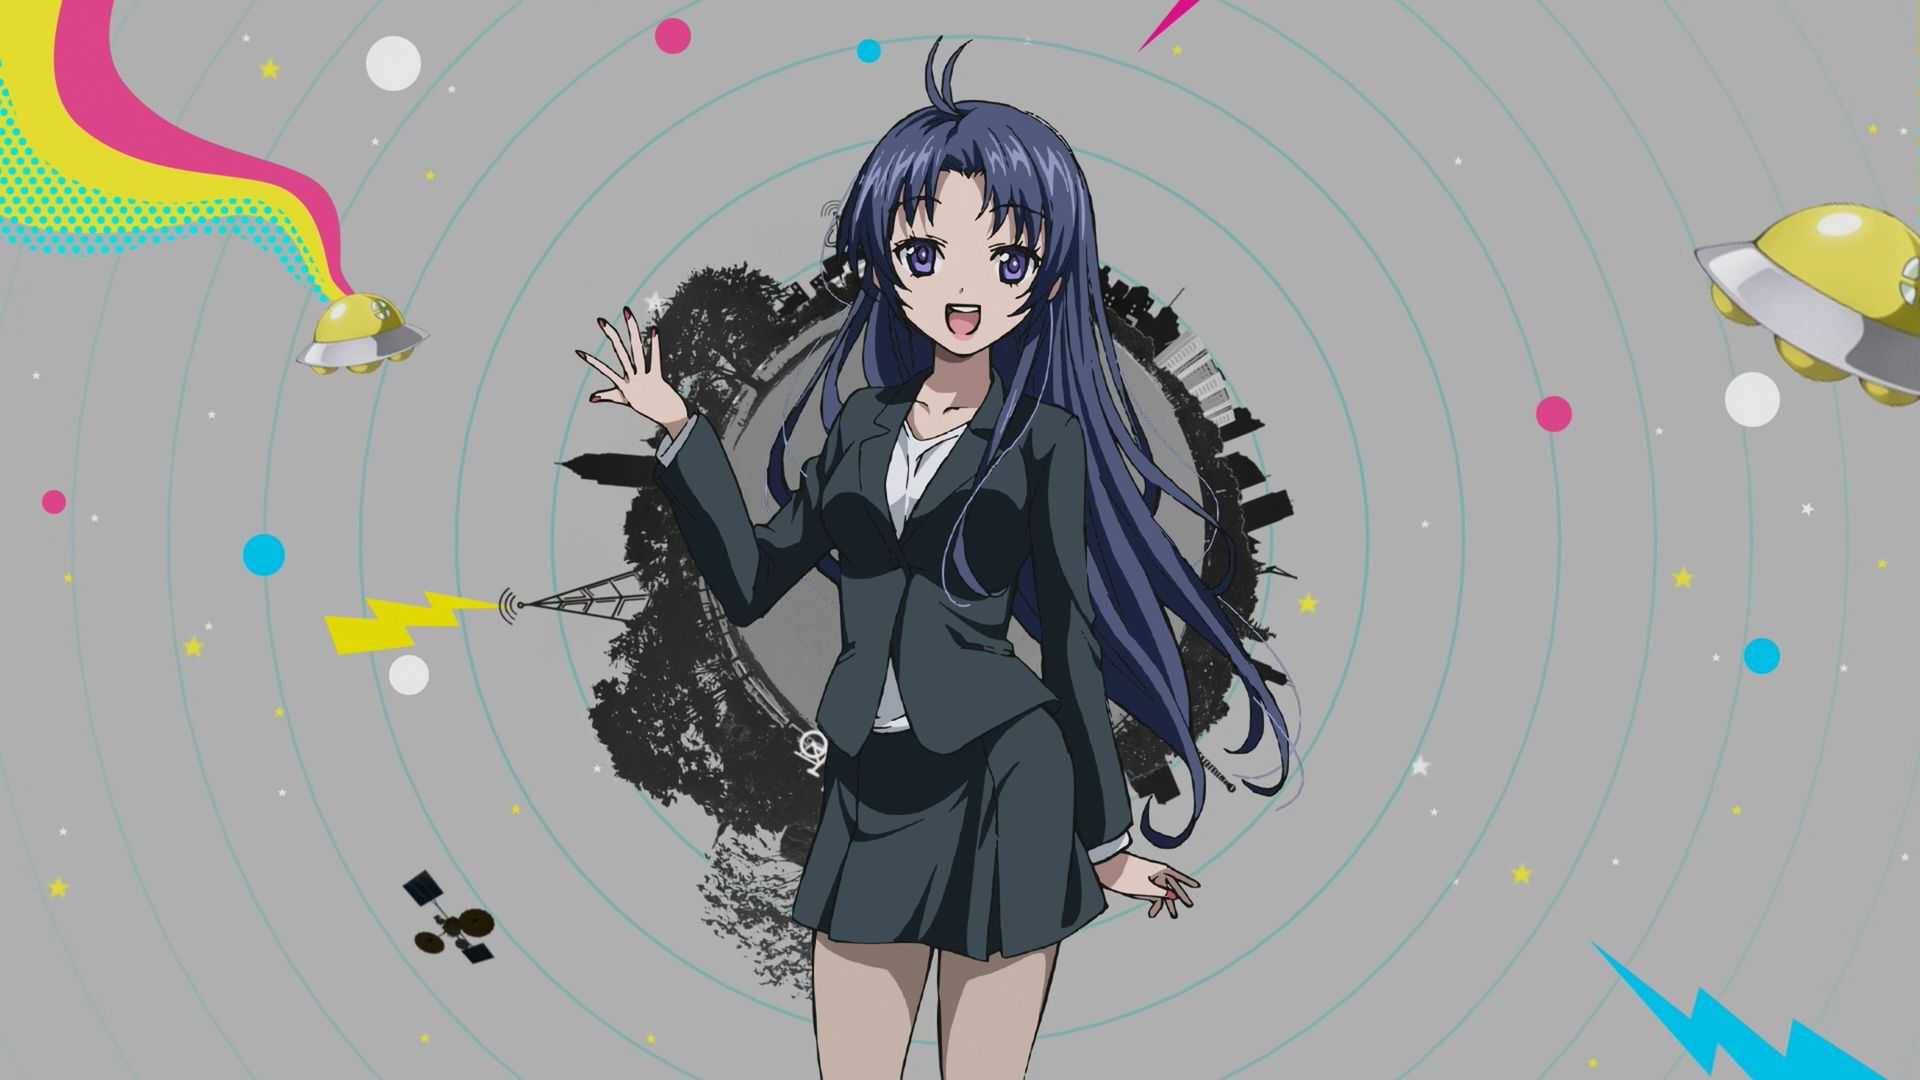 Touwa Meme Onna to Seishun Otoko Anime Image Board